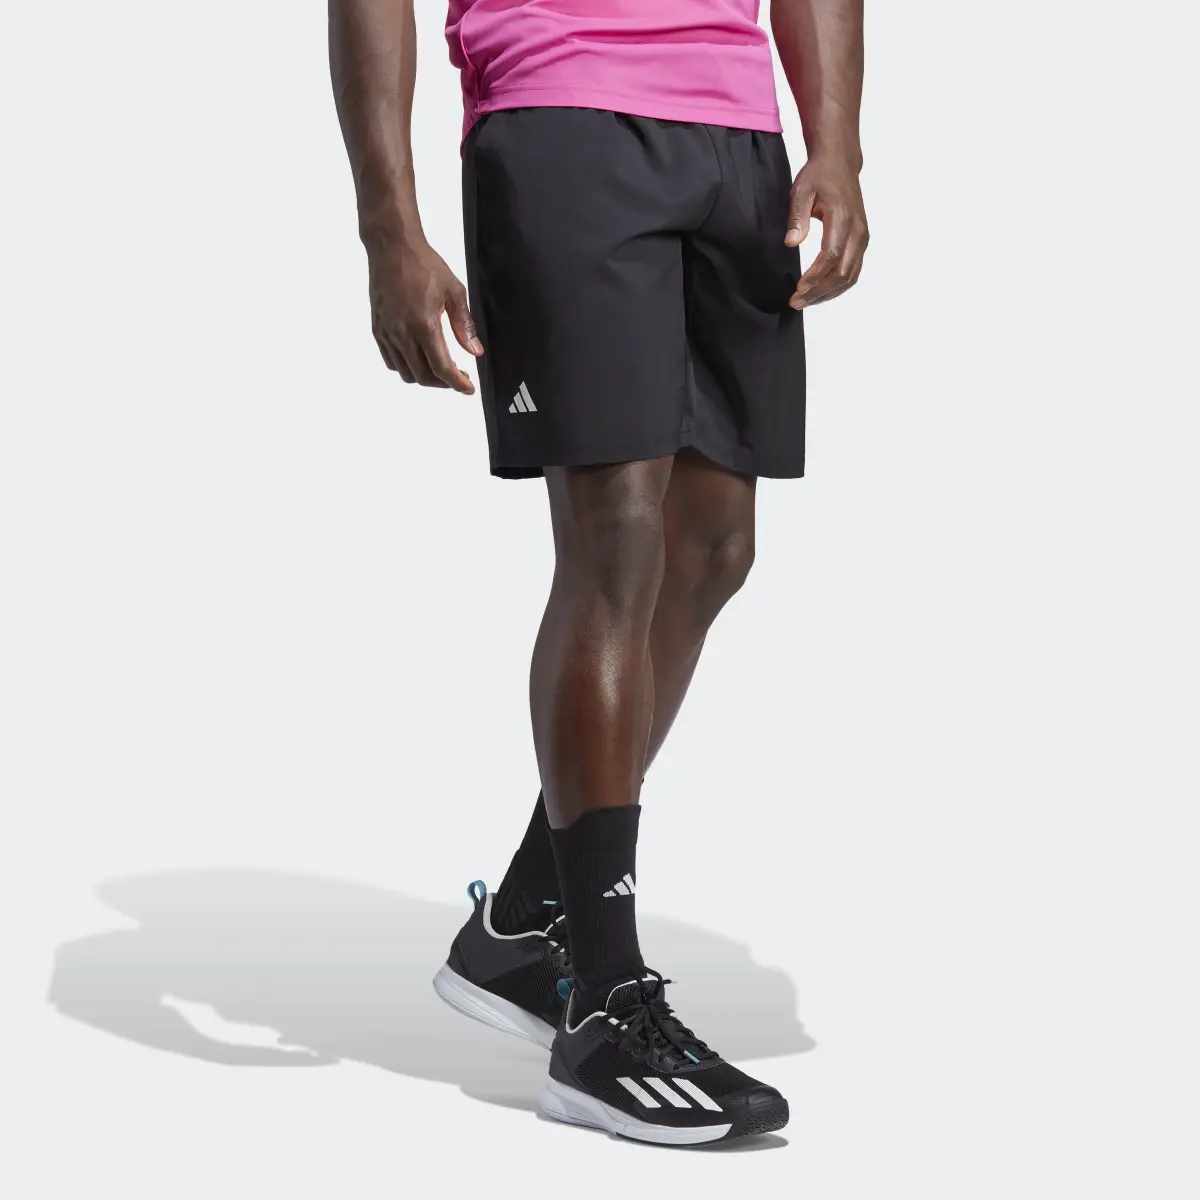 Adidas Club 3-Stripes Tennis Shorts. 3